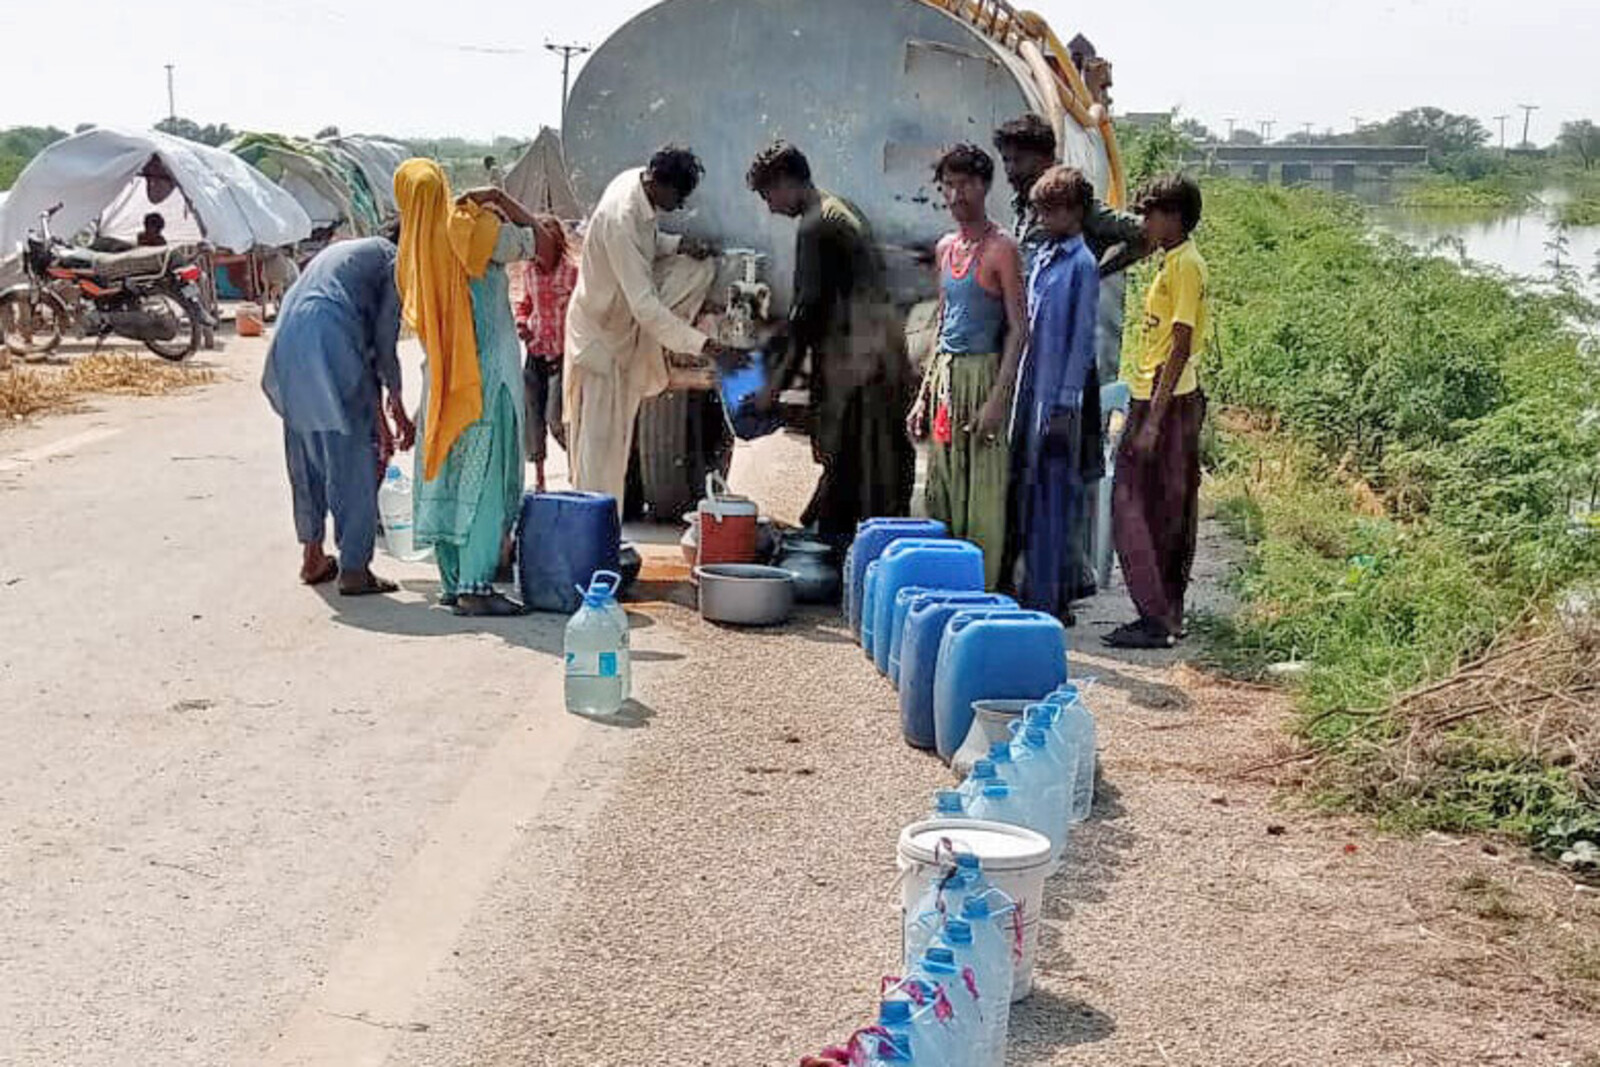 Menschen bei einer Trinkwasserausgabe in Pakistan